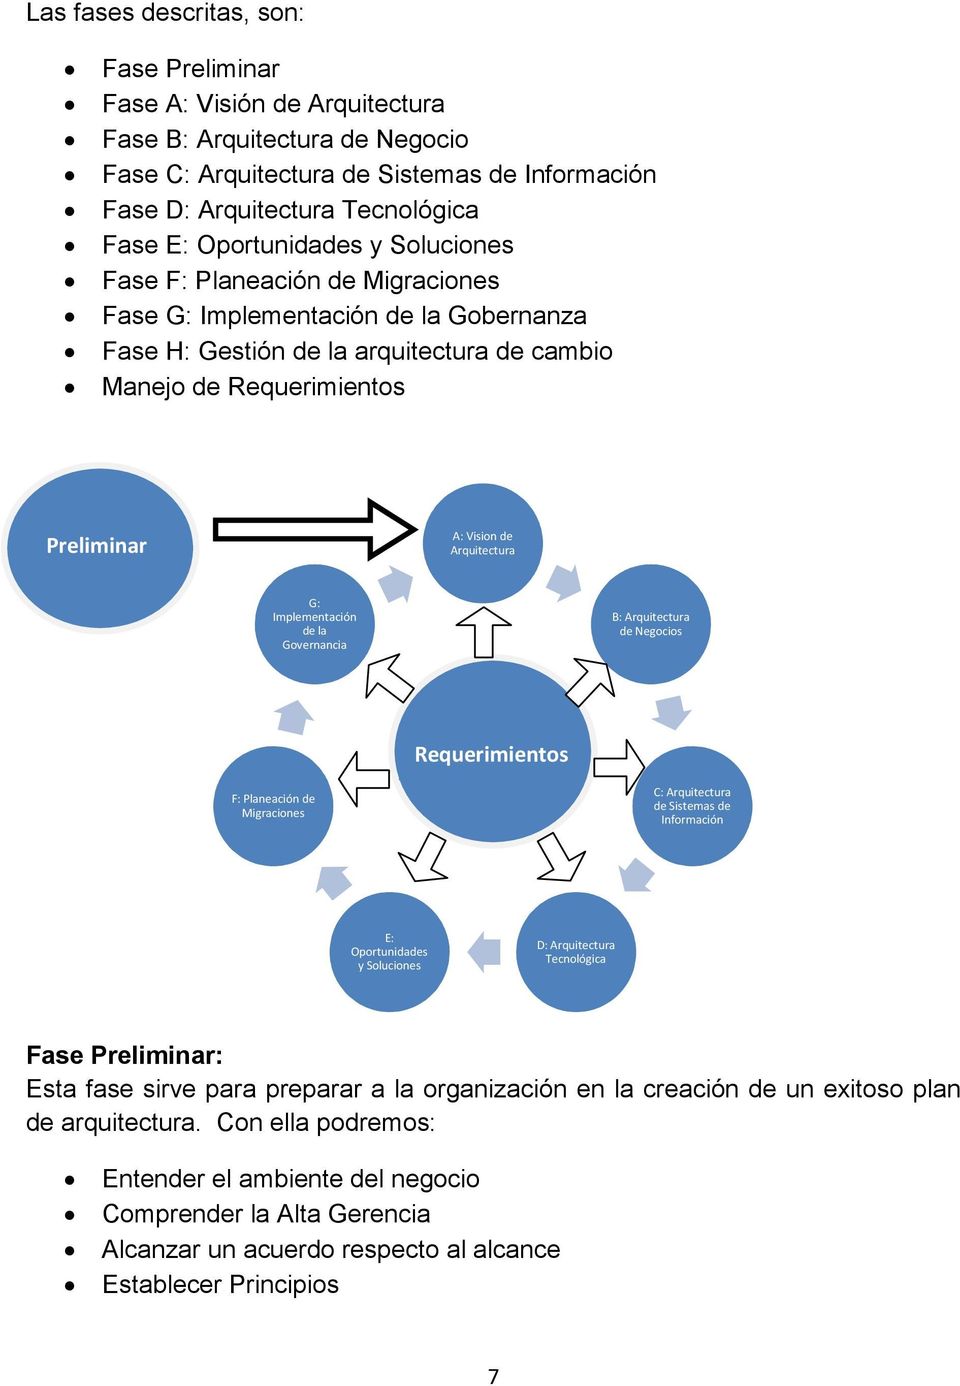 Arquitectura G: Implementación de la Governancia B: Arquitectura de Negocios Requerimientos F: Planeación de Migraciones C: Arquitectura de Sistemas de Información E: Oportunidades y Soluciones D: